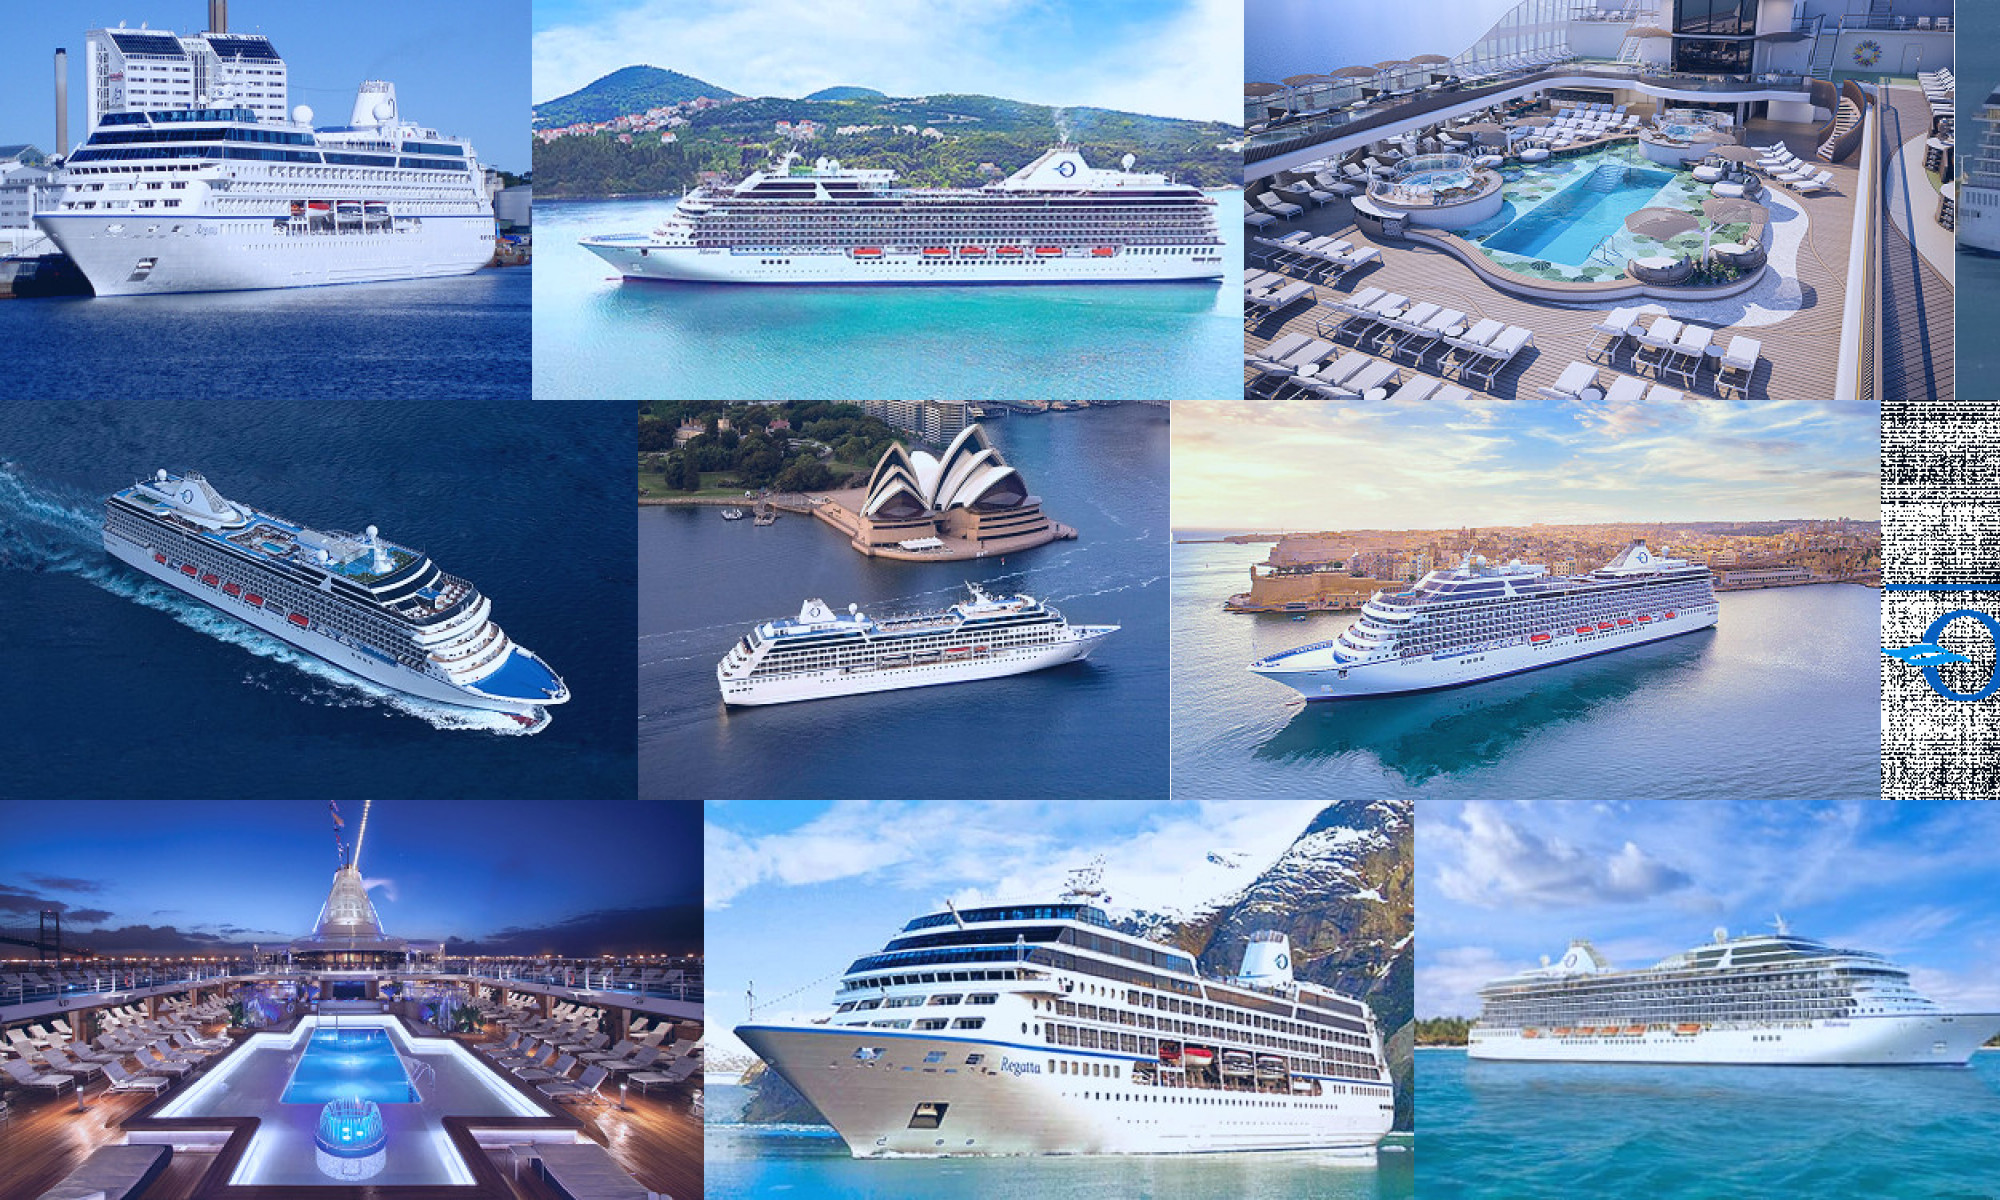 oceania cruises